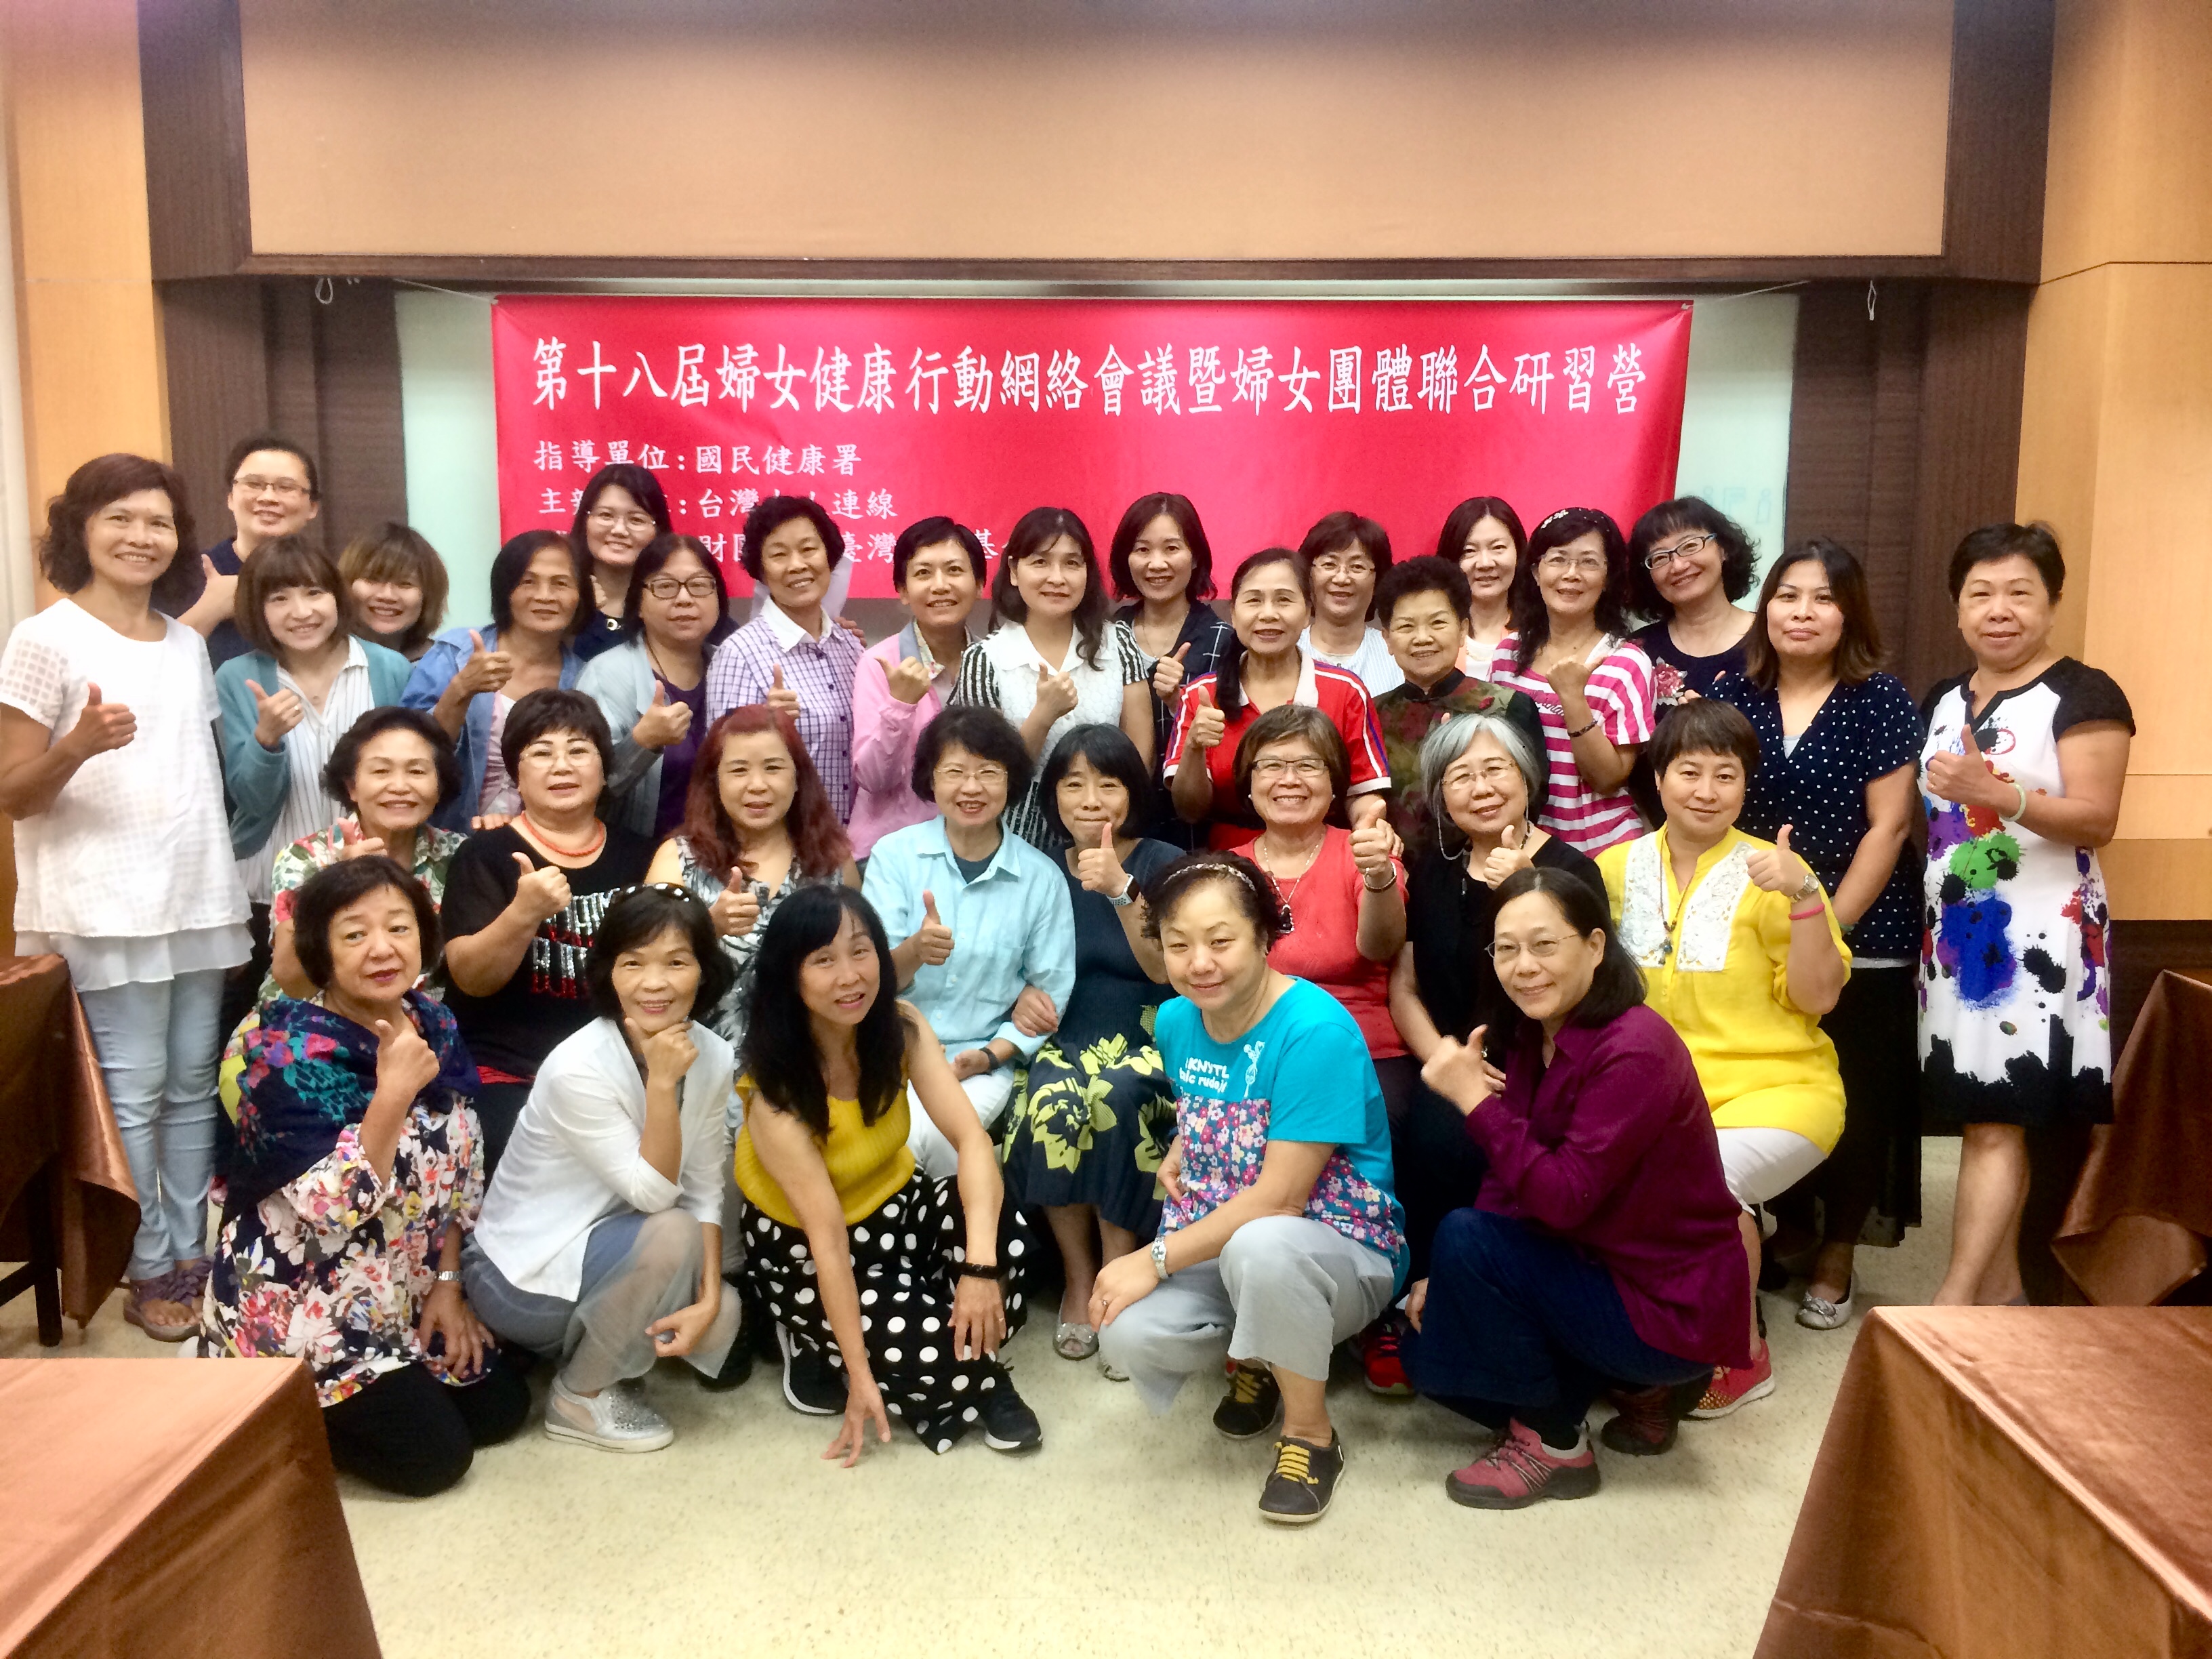 【活動】第18屆婦女健康行動網絡會議暨婦女團體聯合研習營